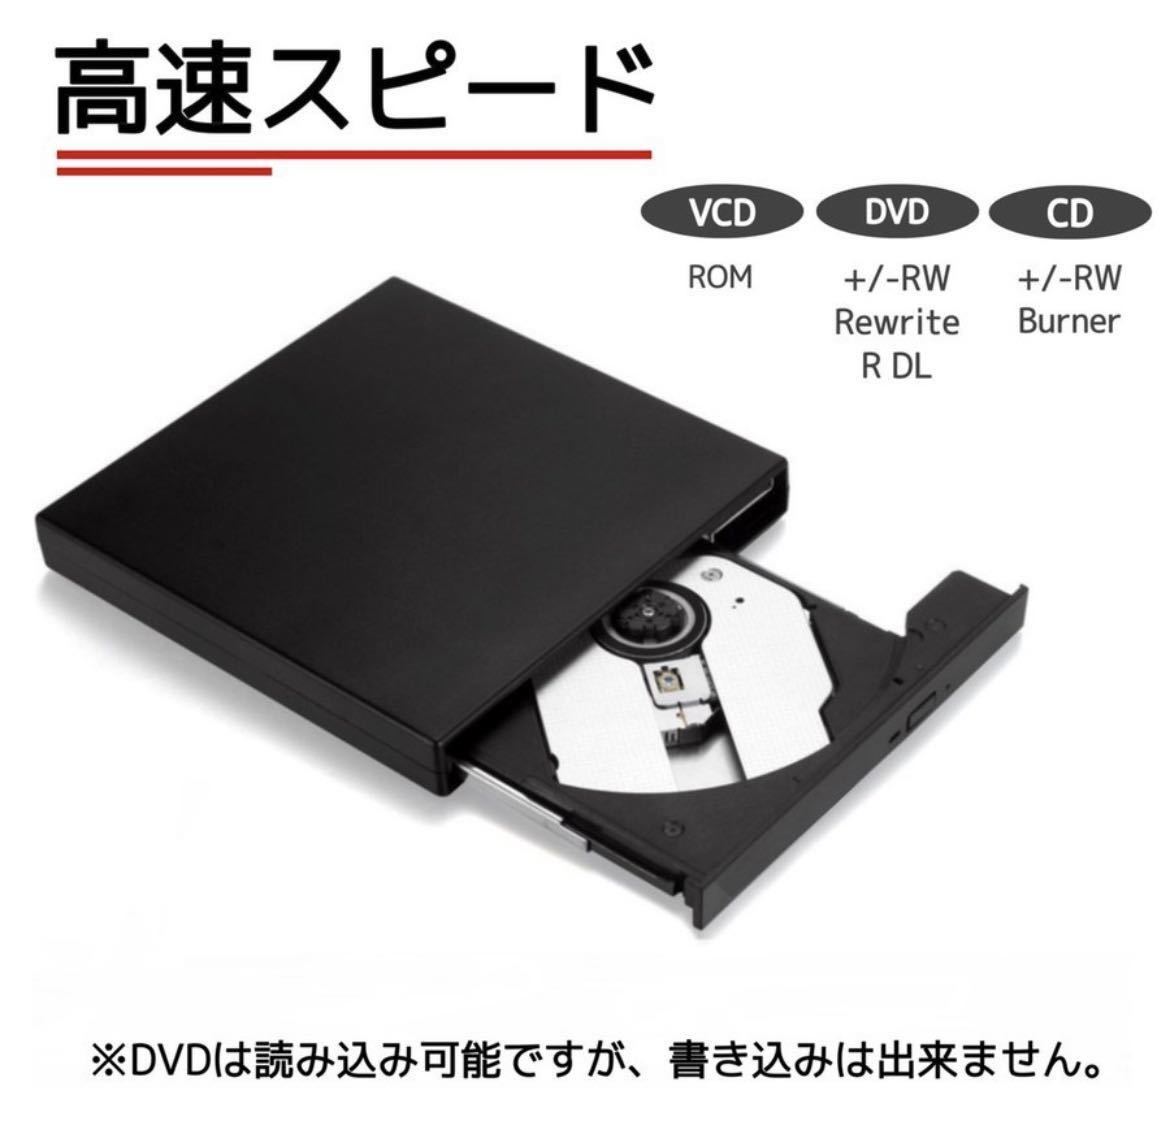 【アウトレット品】DVDドライブ 外付け USB2.0 ポータブル CDドライブ Mac Windows CD-RW DVD-R スリム コンパクト 書き込み対応 ブラック